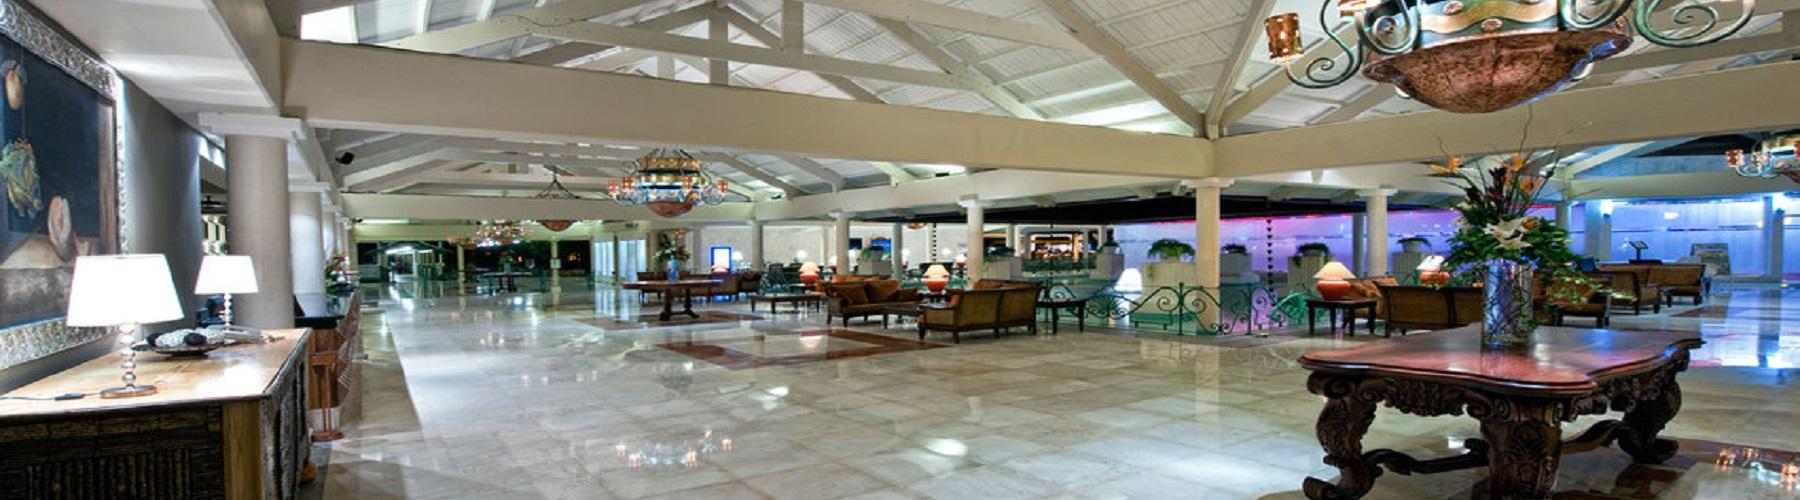 Забронировать отель Iberostar Punta Cana 5*